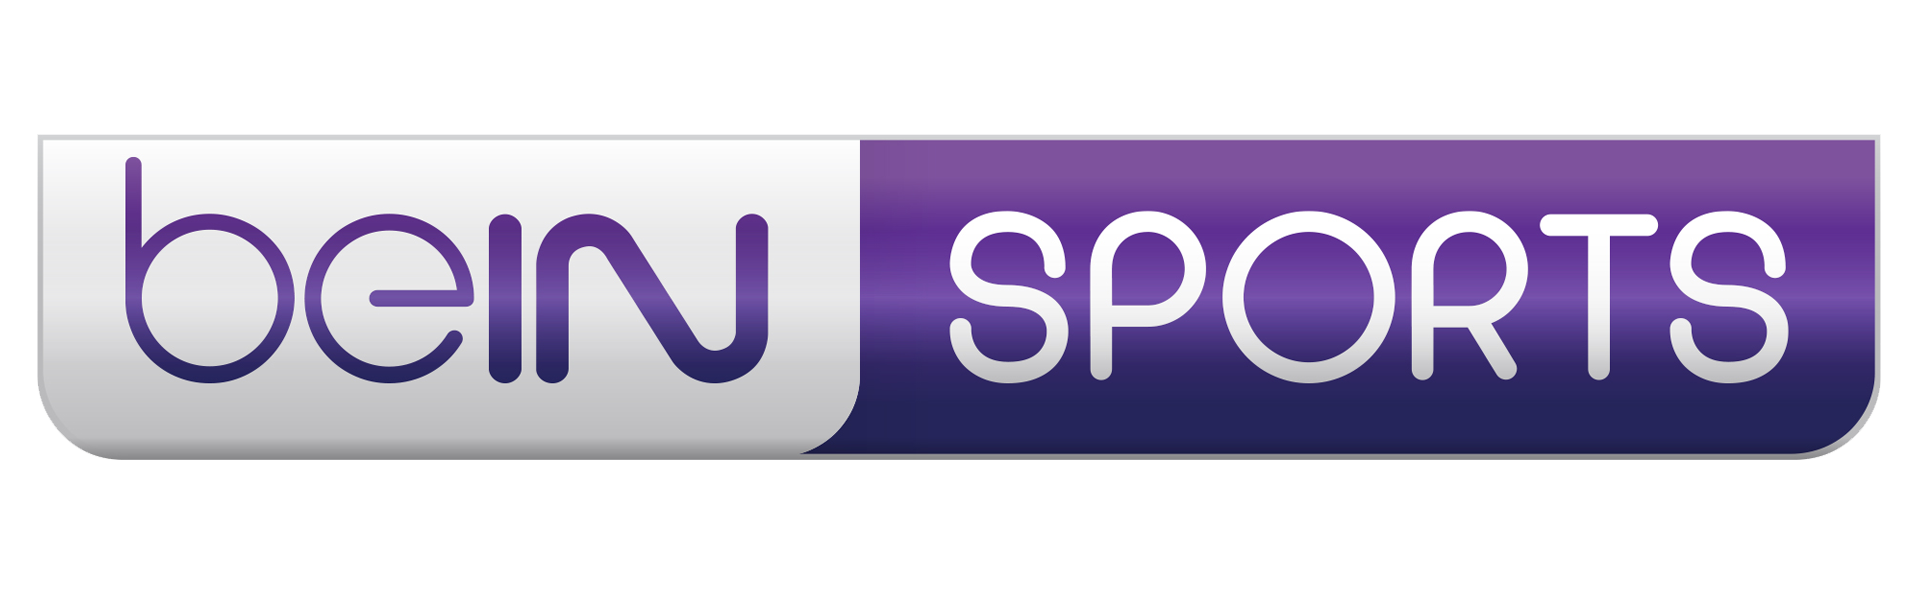 Bein sports 3 sport. Bein Sport 1 logo. Логотип канала Bein Sports 2. Лого Беин Спортс. Bein Sports Max 1.